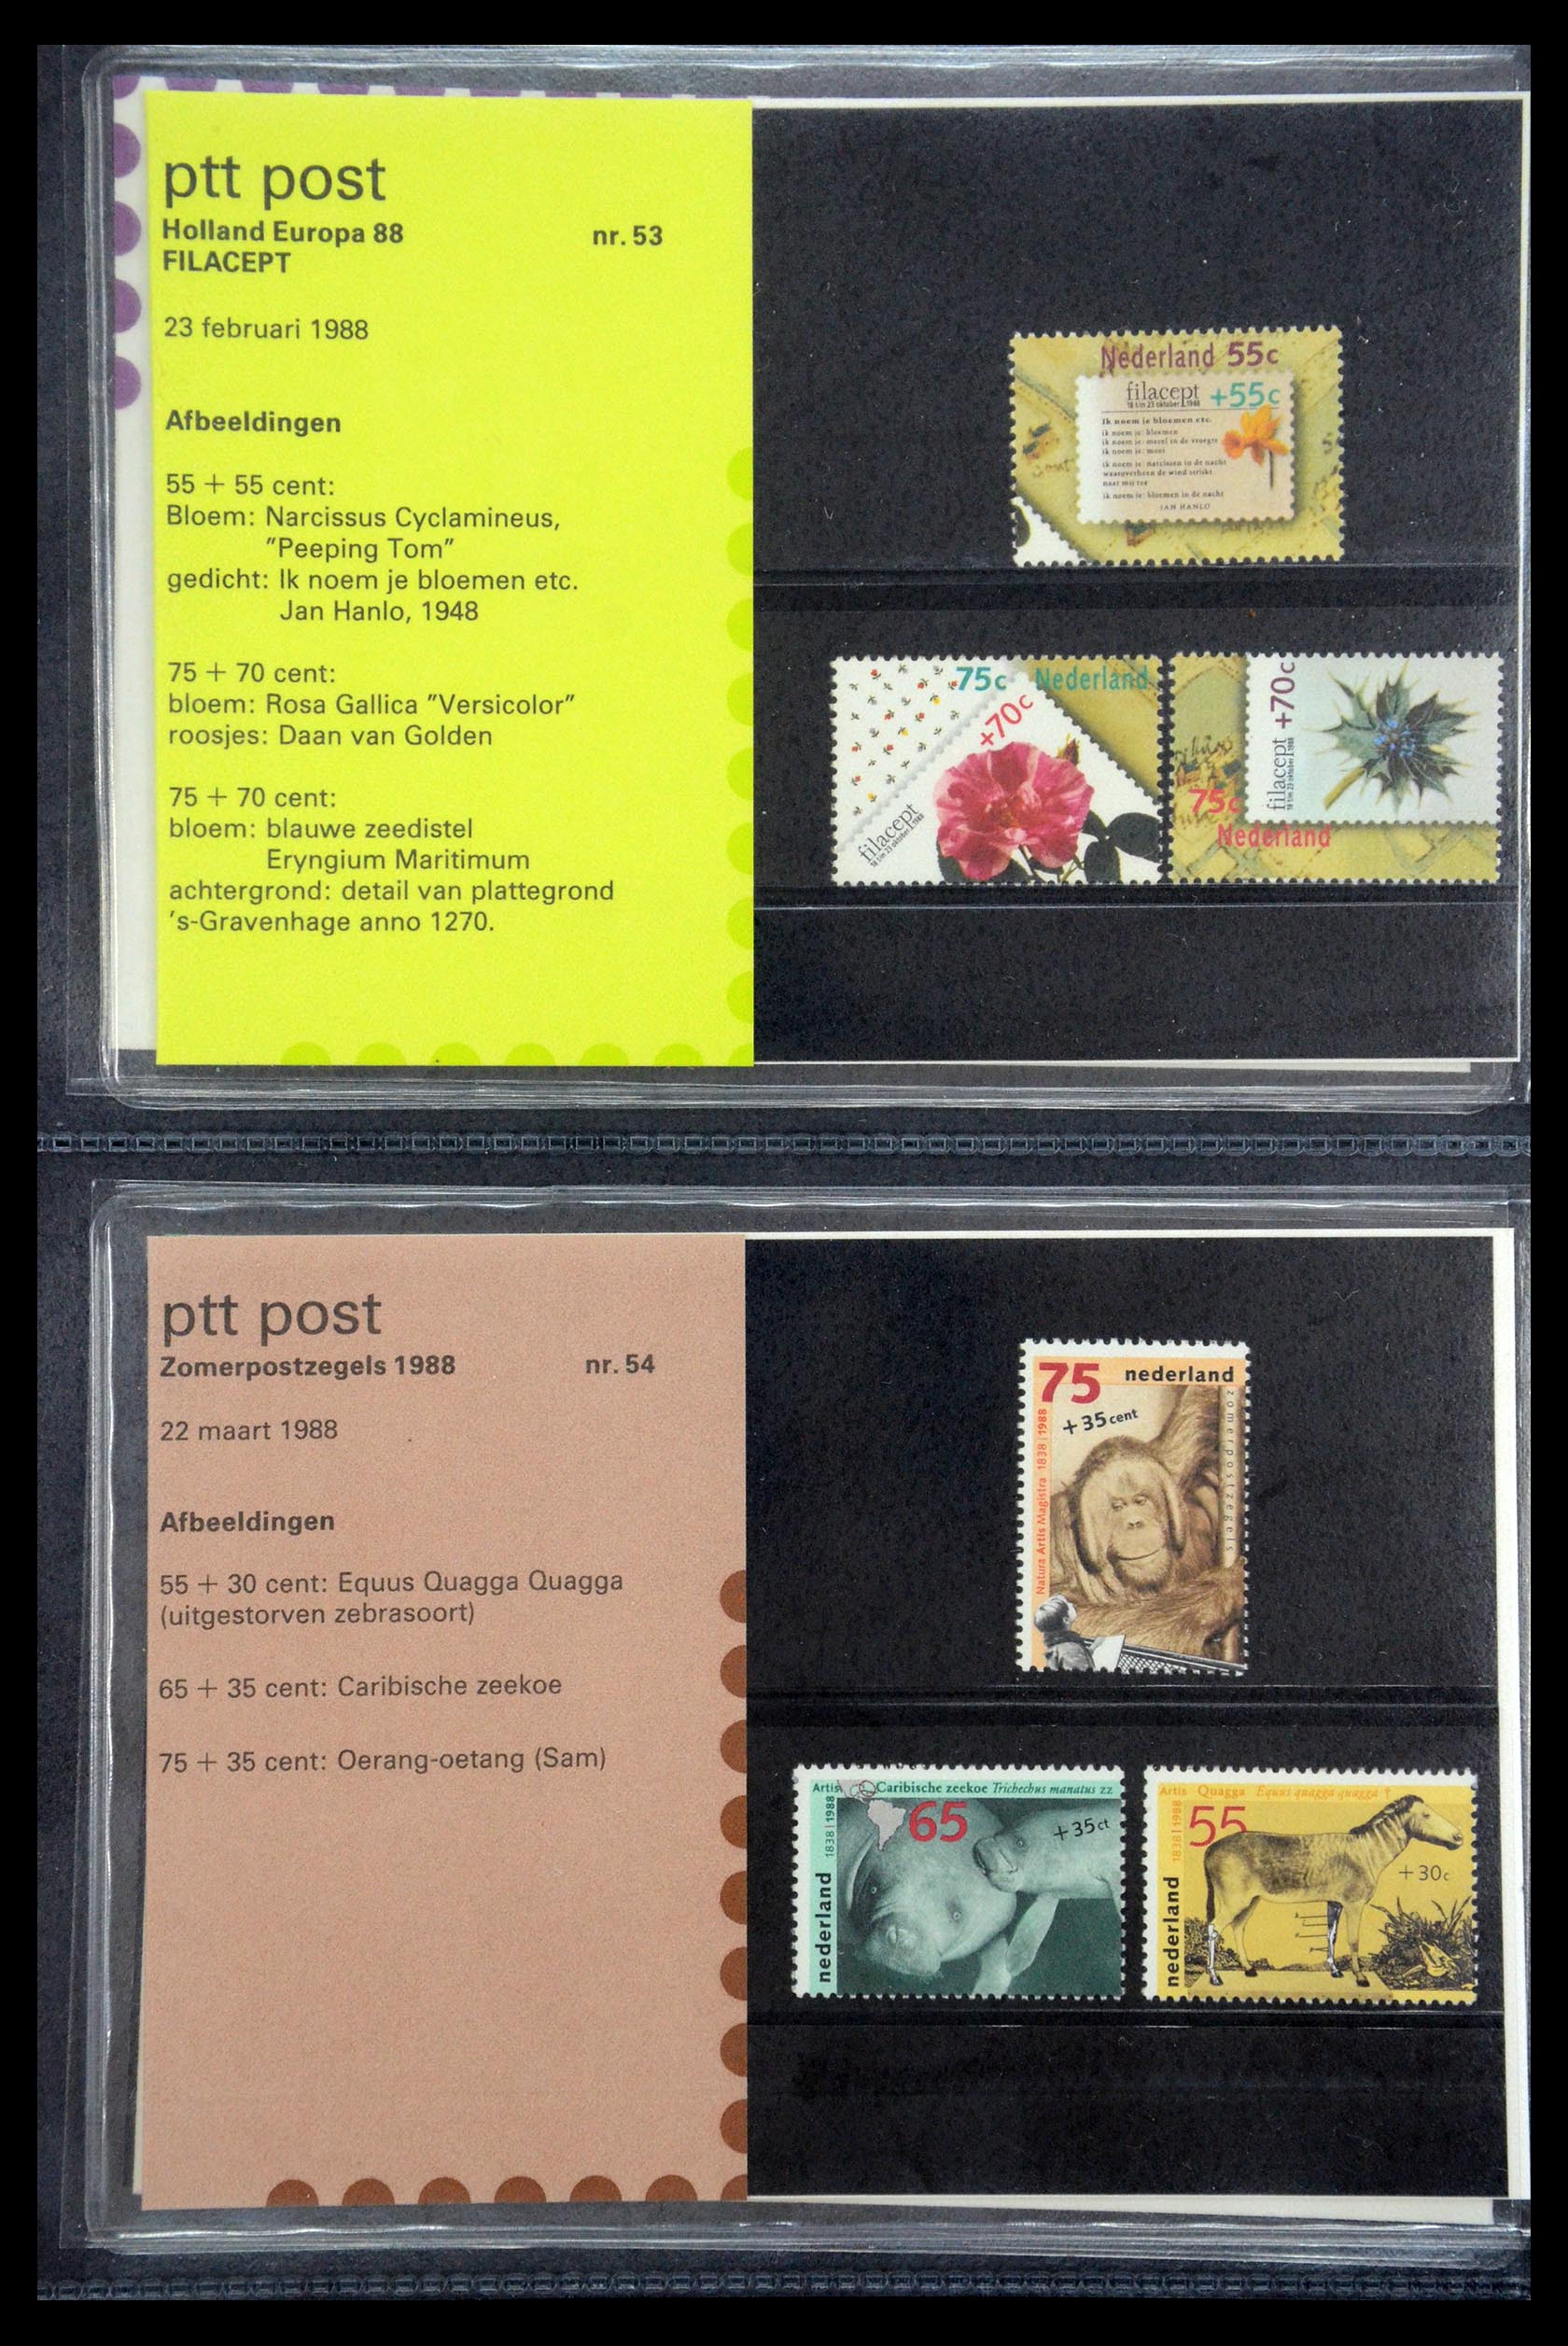 35187 027 - Stamp Collection 35187 Netherlands PTT presentation packs 1982-2019!